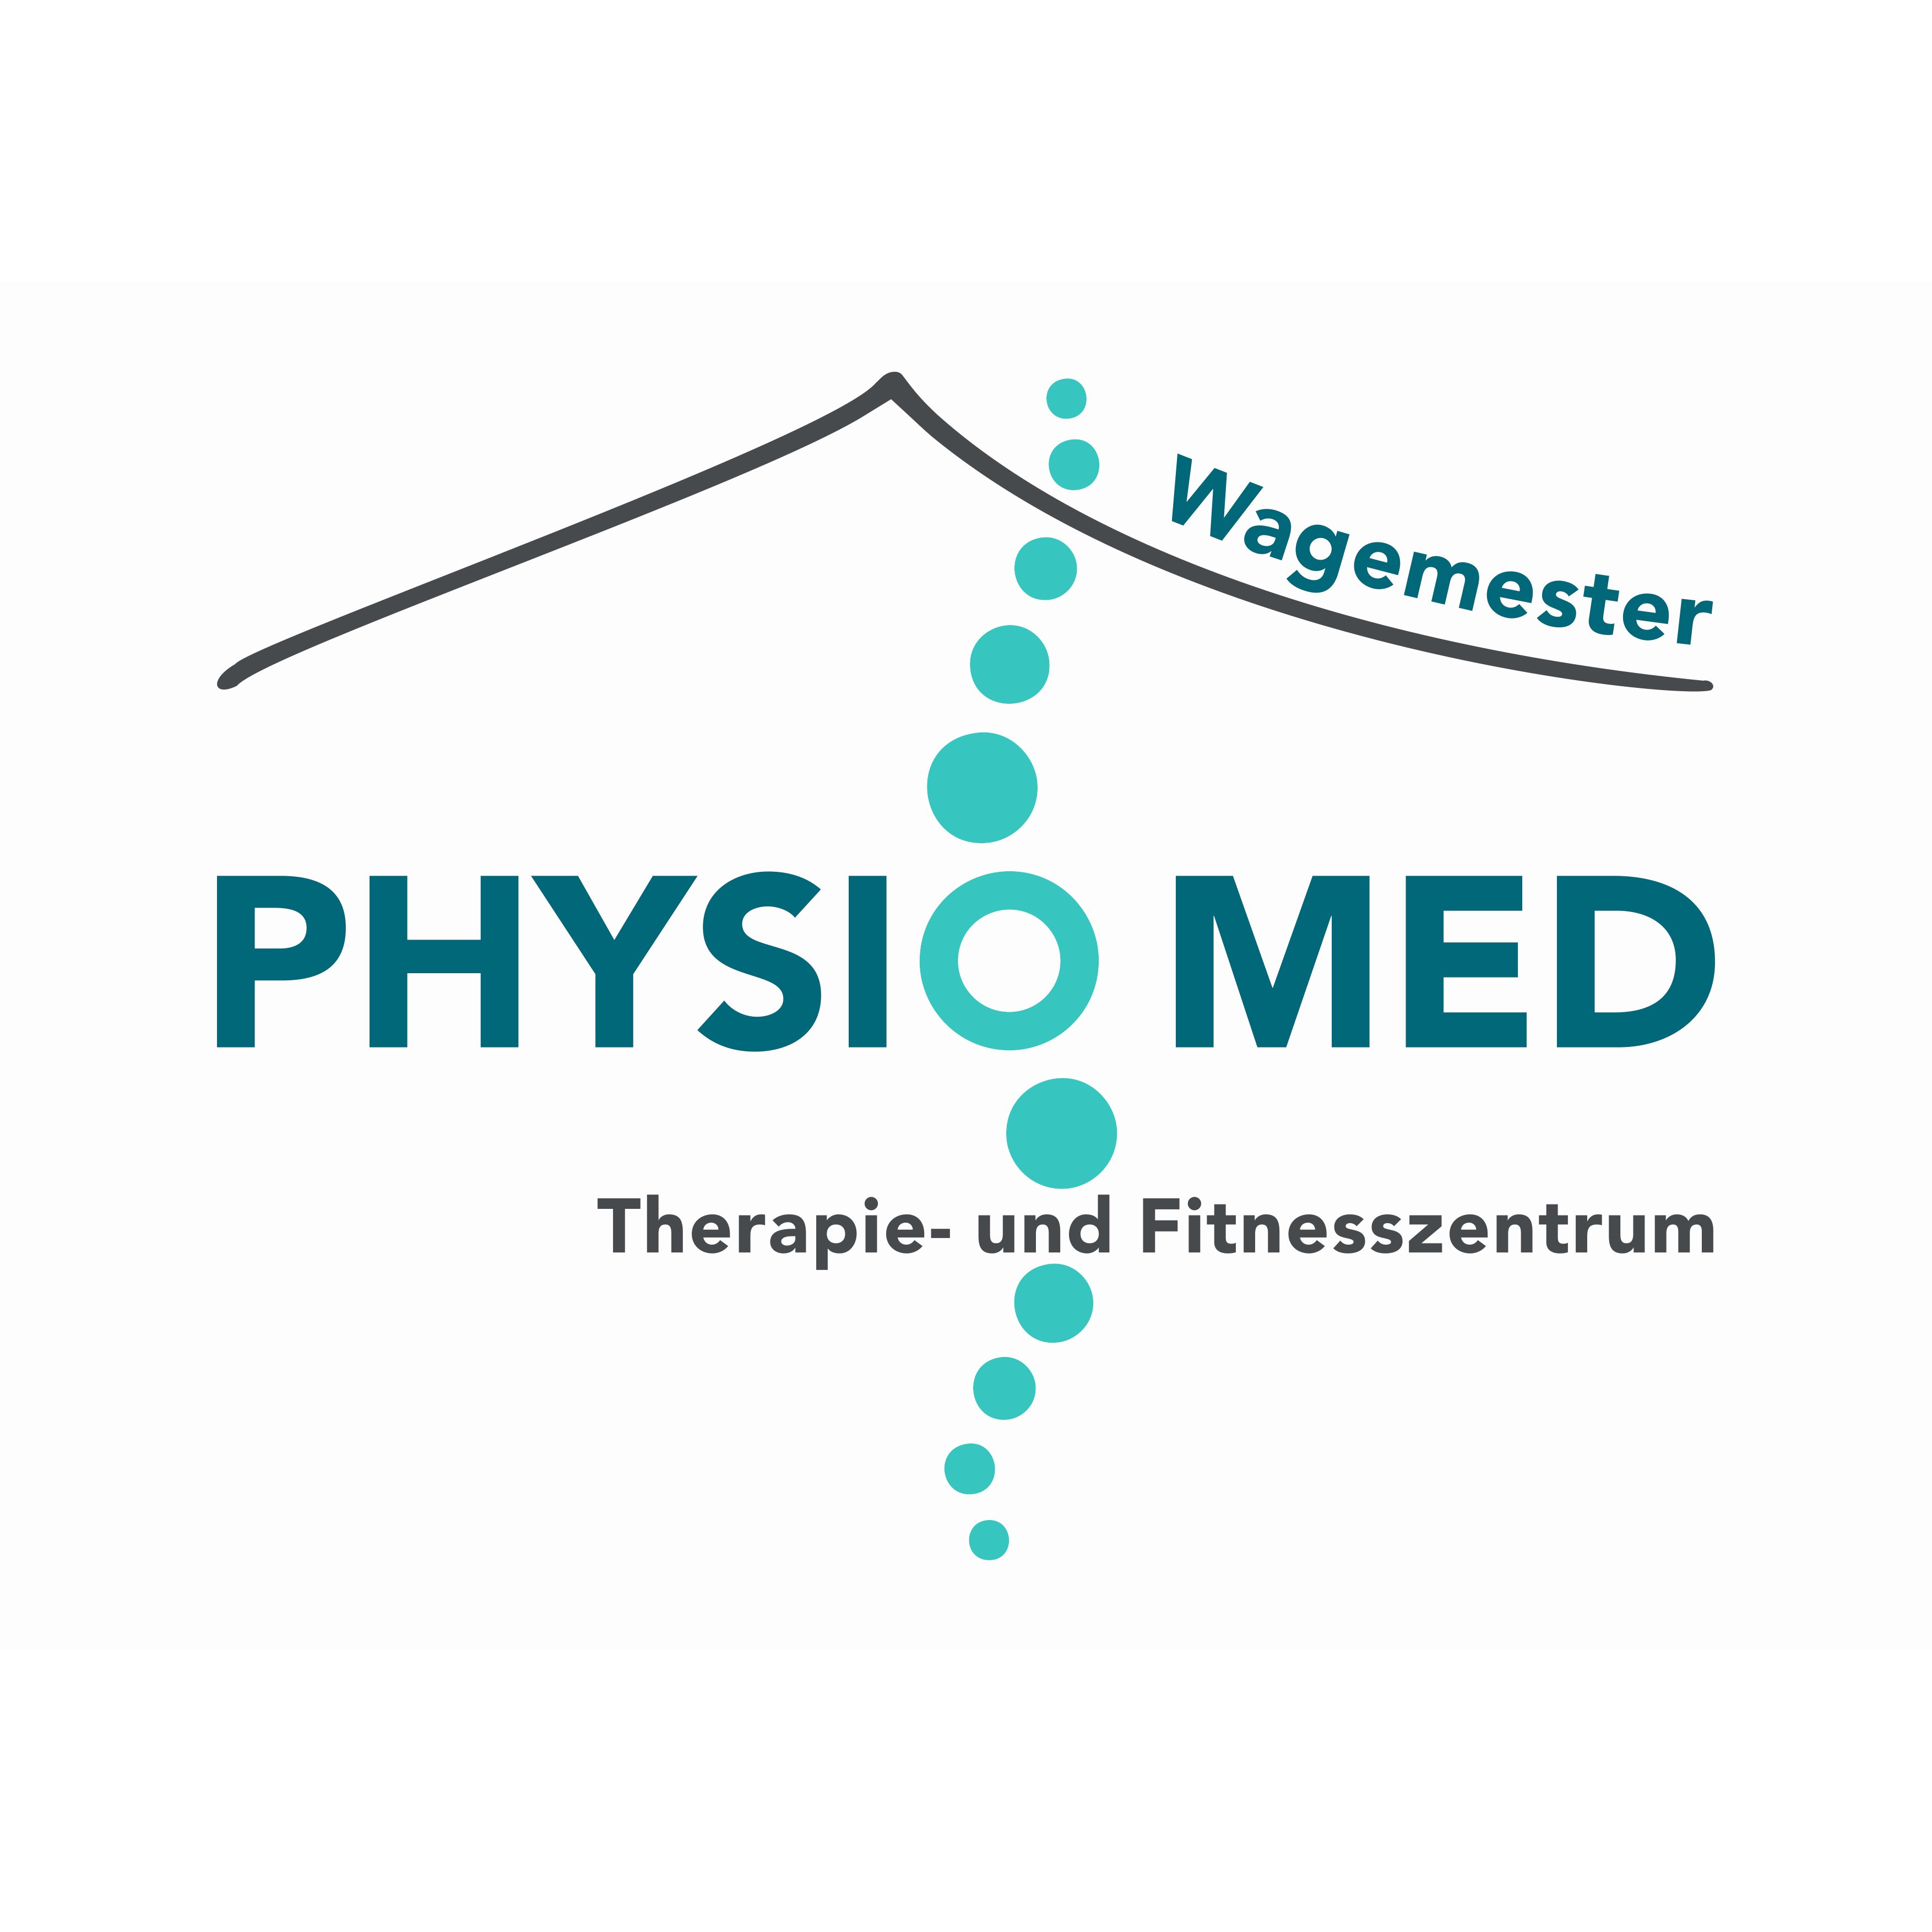 PhysioMed Wagemester | Therapie- und Fitnesszentrum | Linda Krone